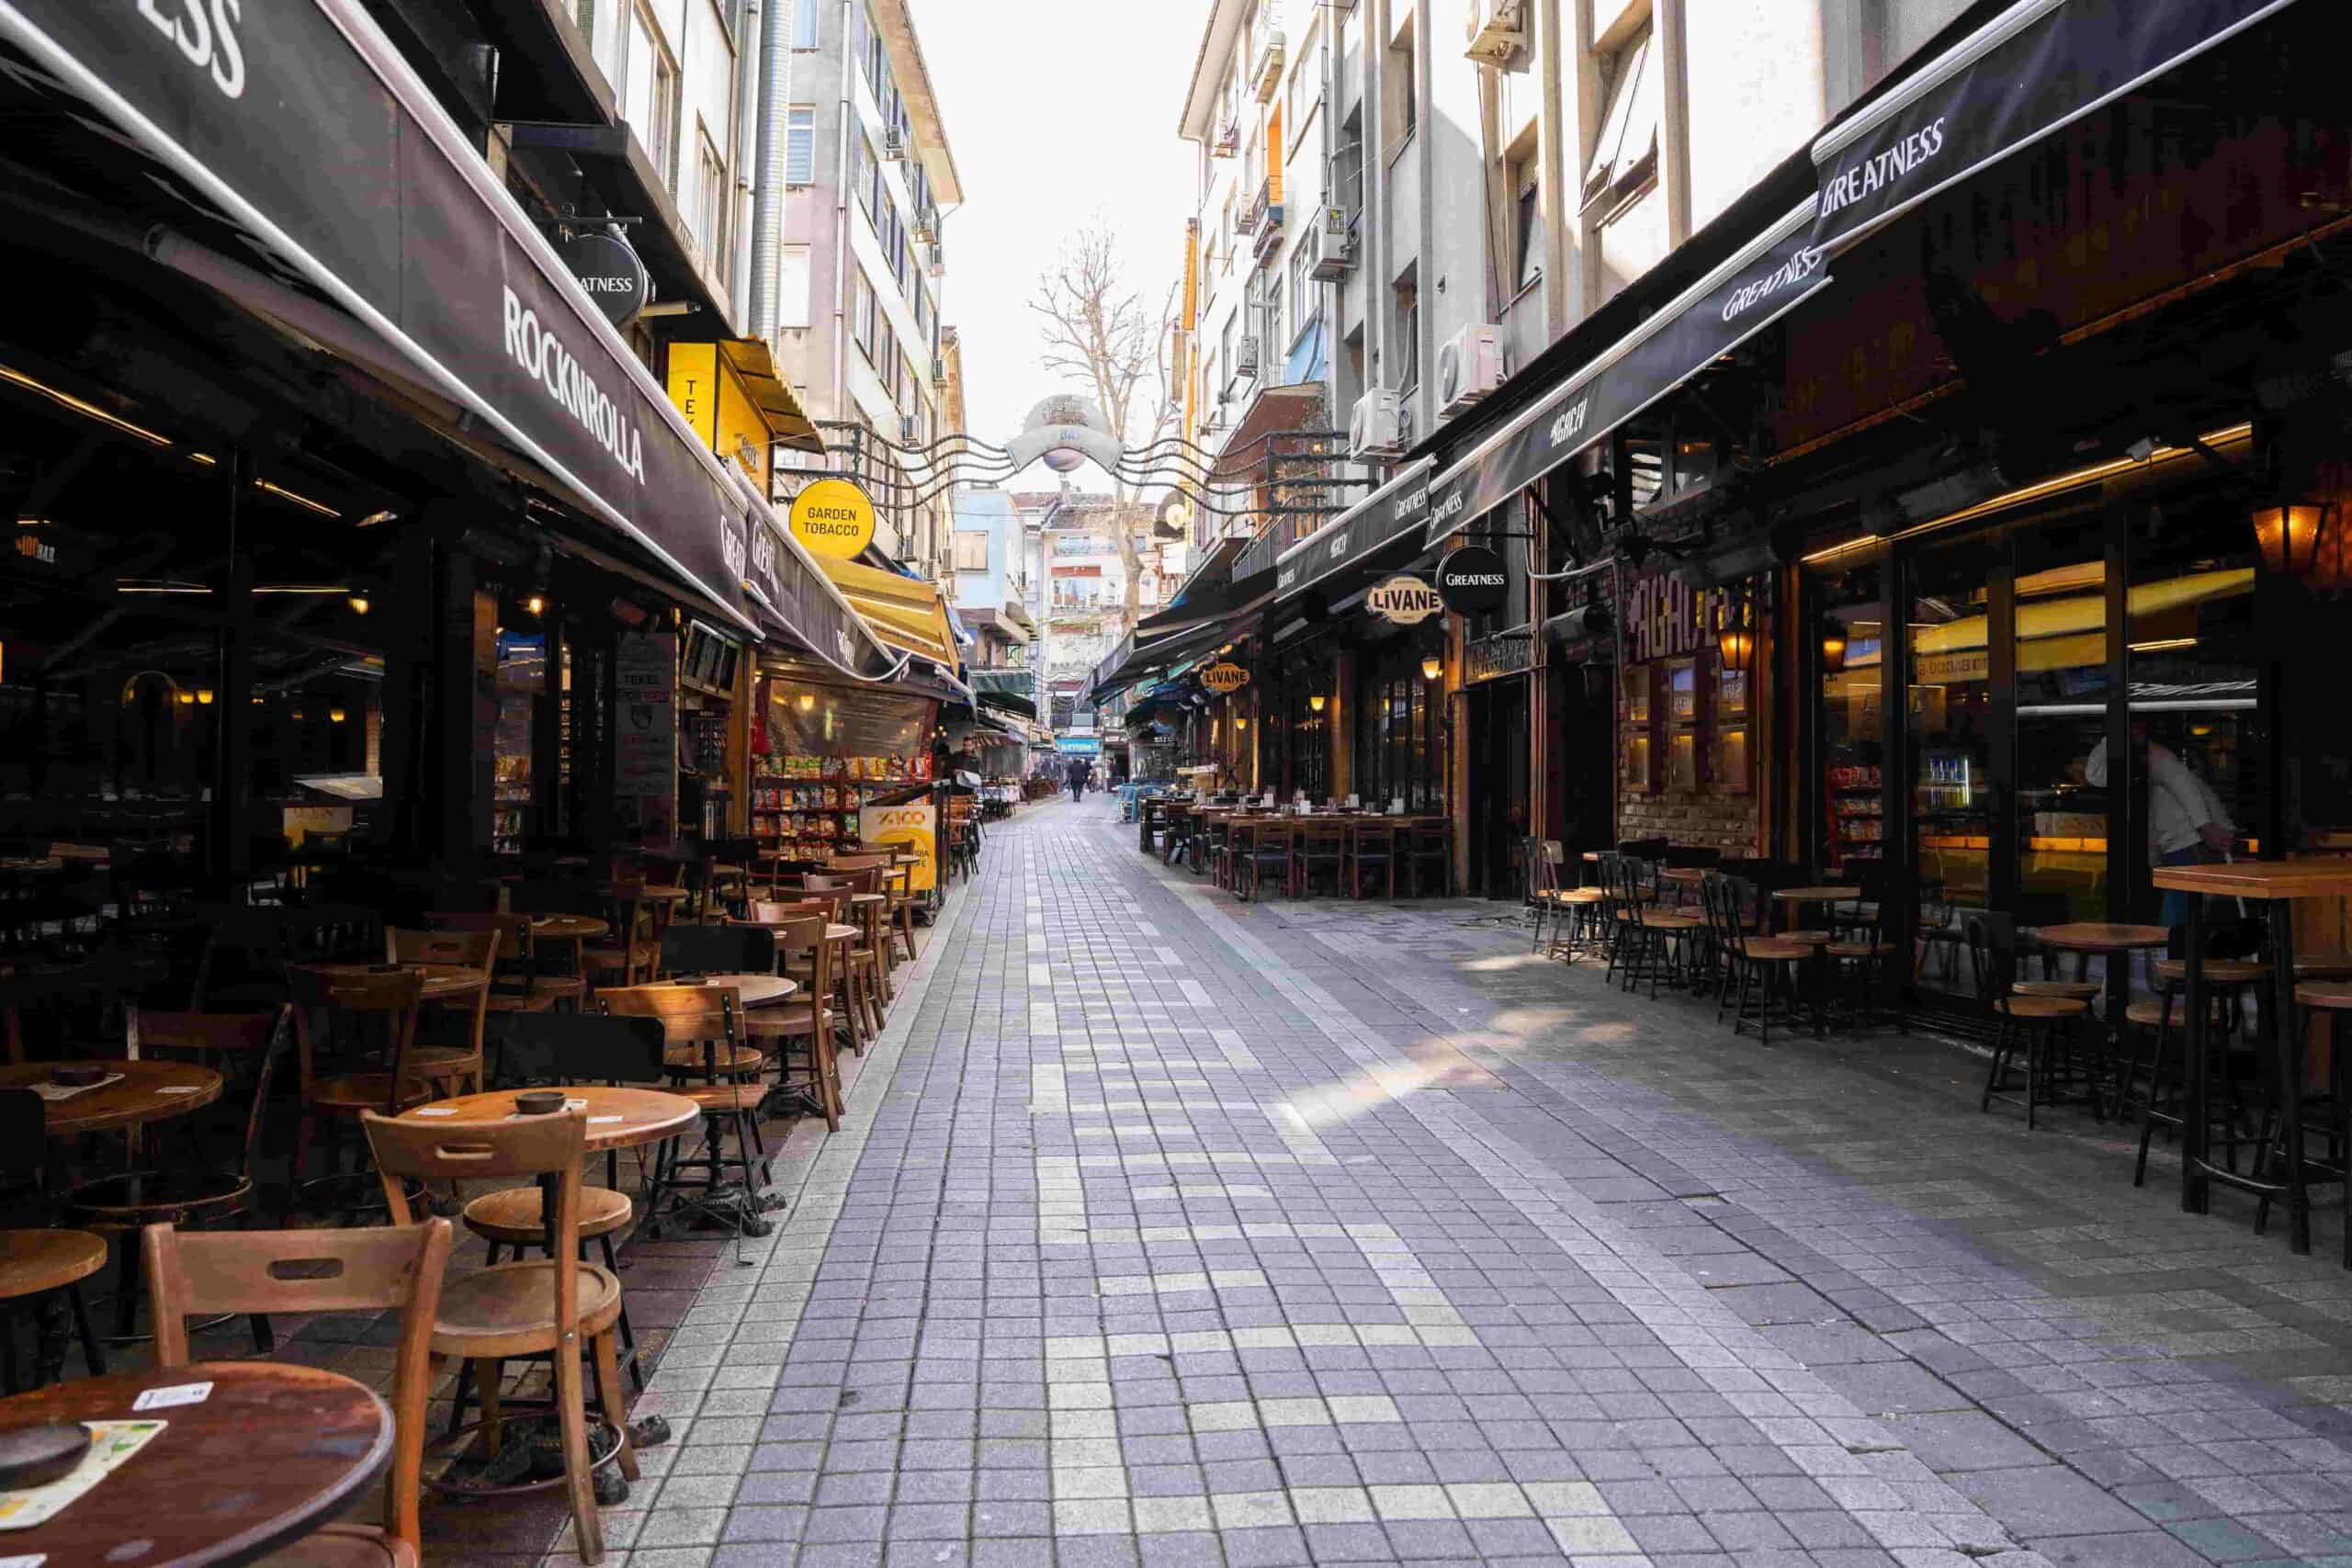 Kadıköy Barlar Sokağı